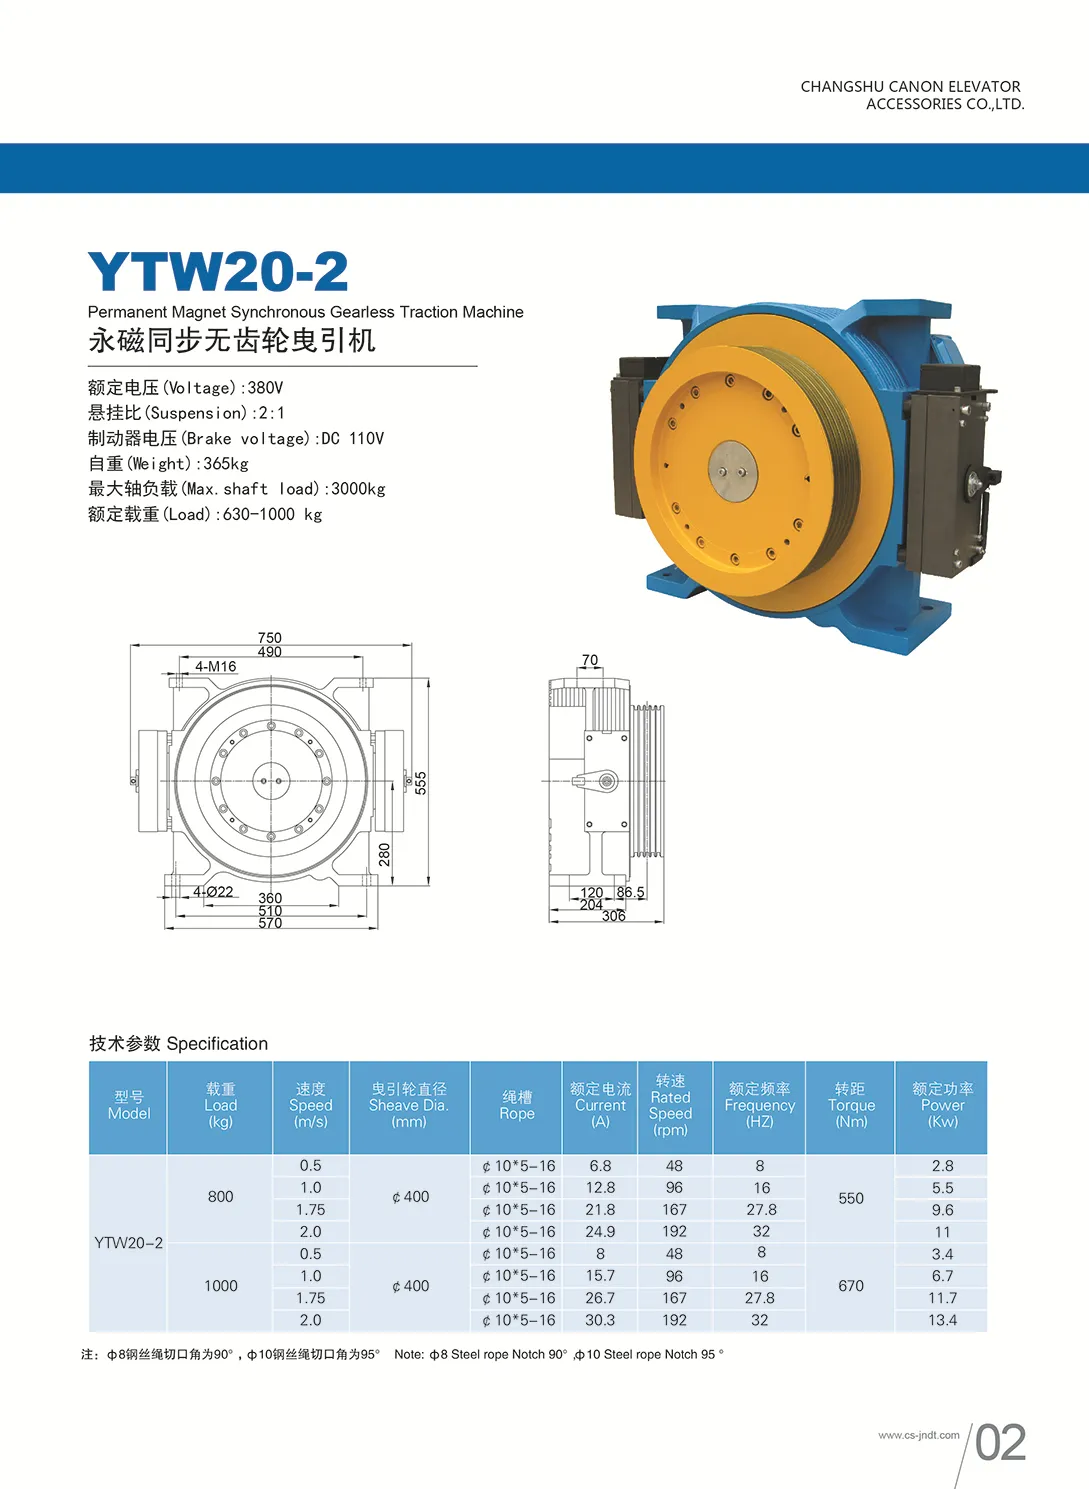 Лифт основной части лифта постоянного магнита синхронных gearless тяги мотора машина модель YTW20-2